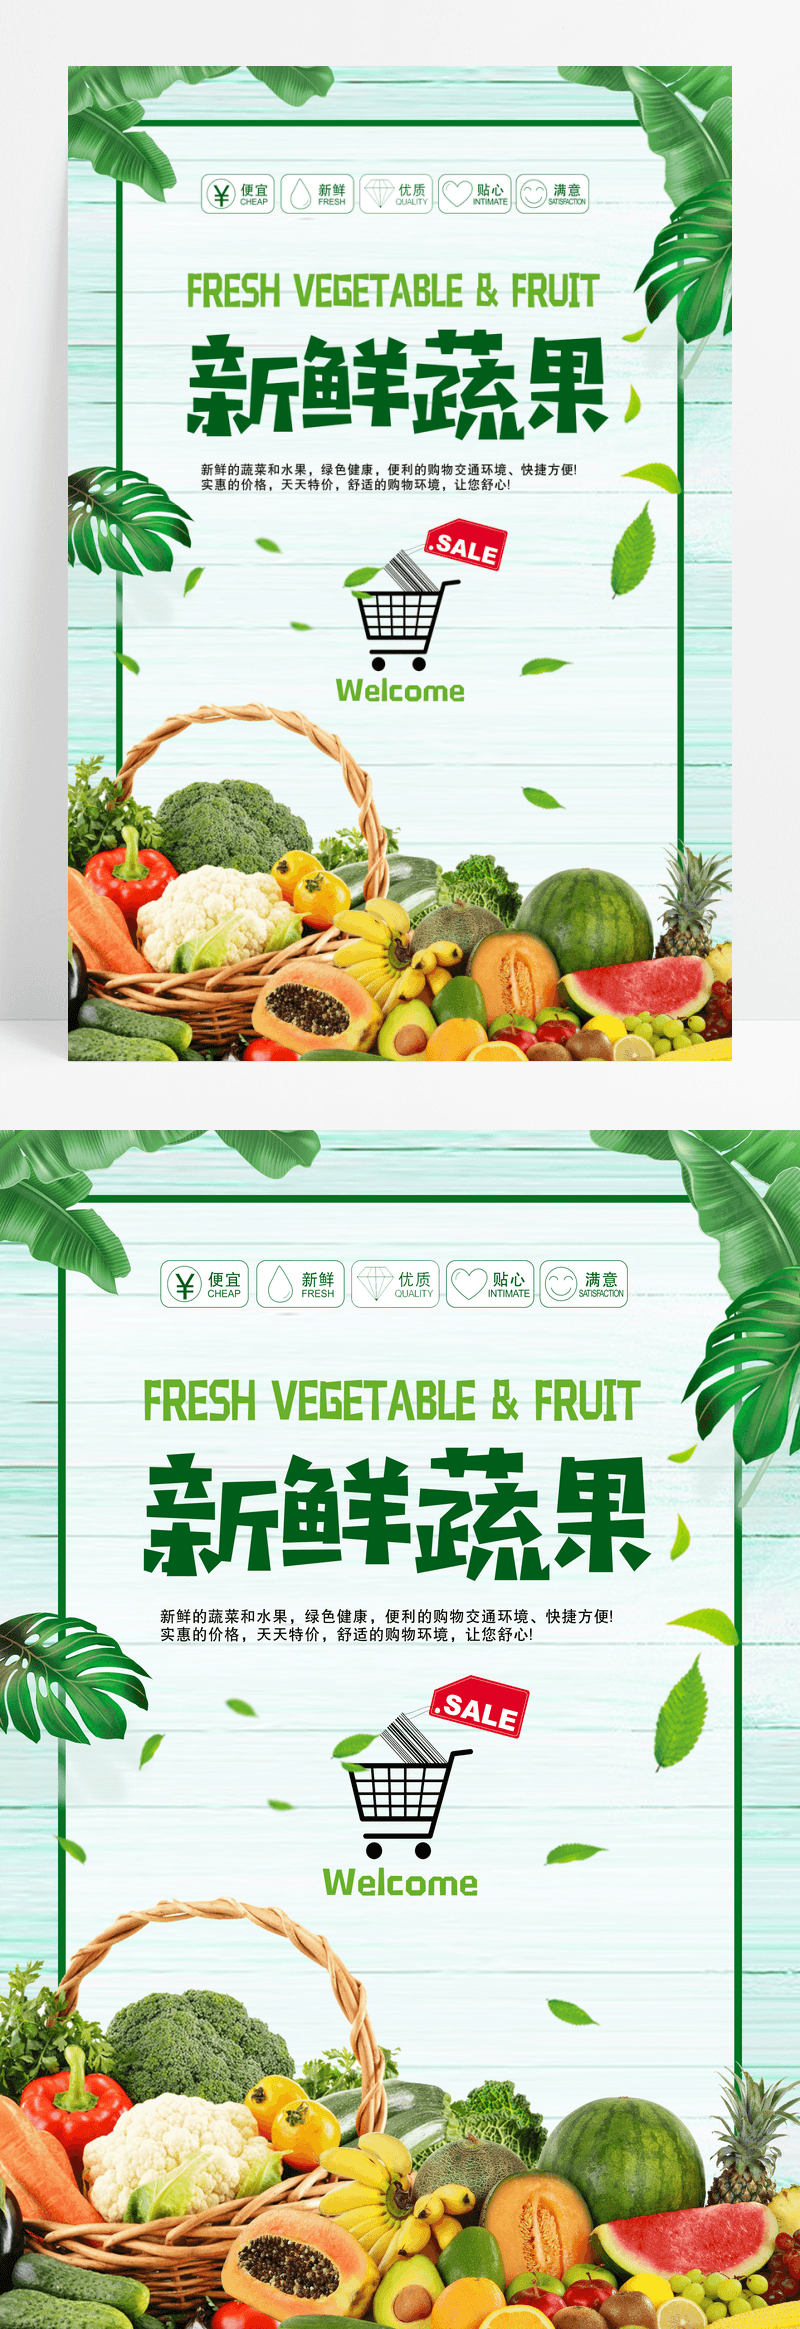 小清新超市新鲜蔬果促销海报